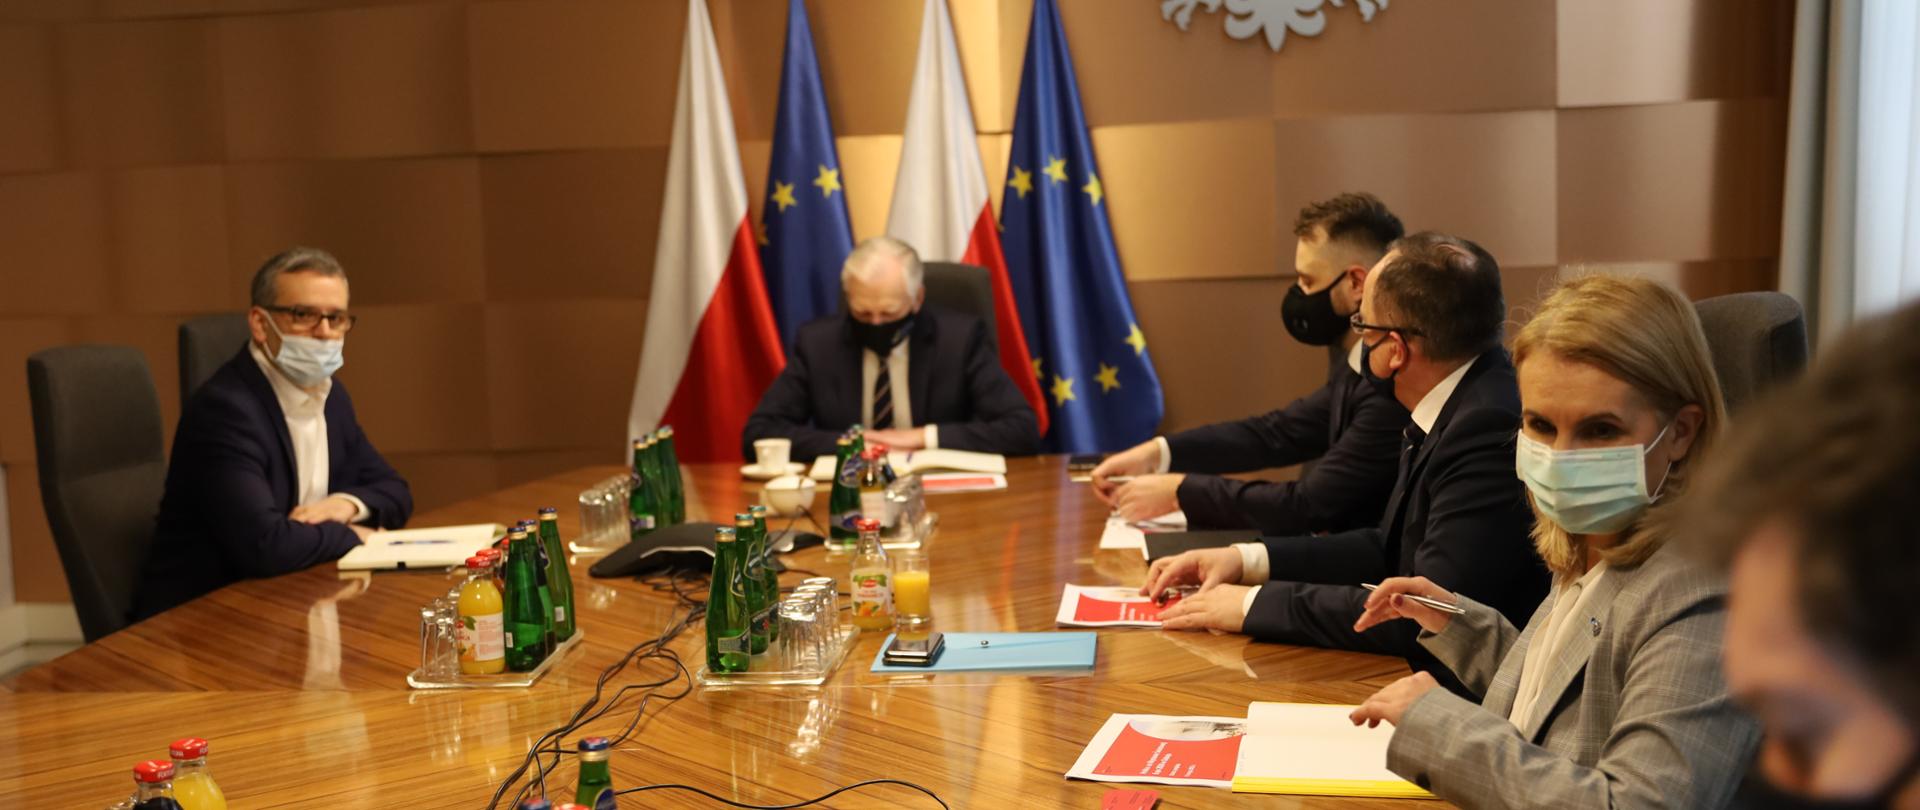 Premier Jarosław Gowin: EXPO2020 szansą na szybki rozwój gospodarczy